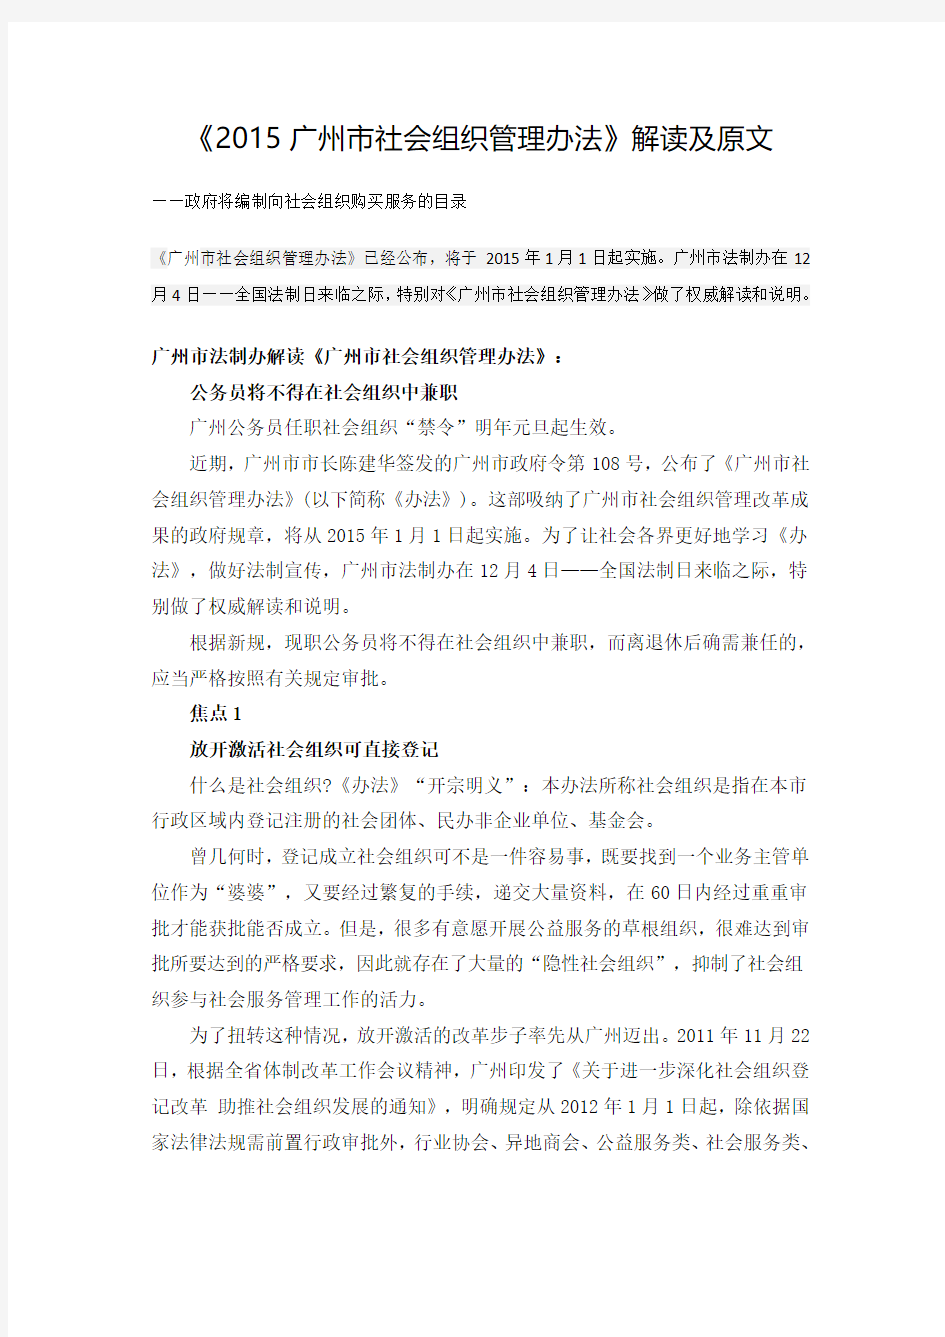 《2015广州市社会组织管理办法》解读及原文